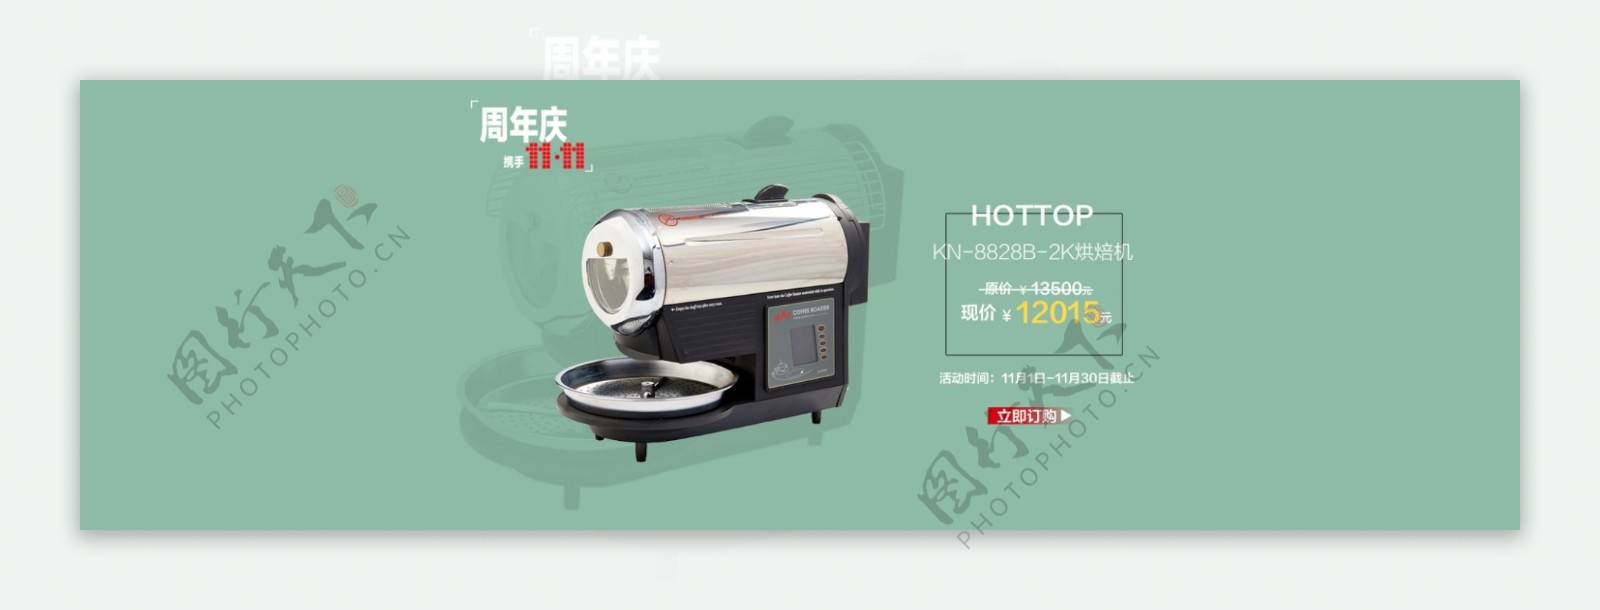 hottop烘焙机双11海报